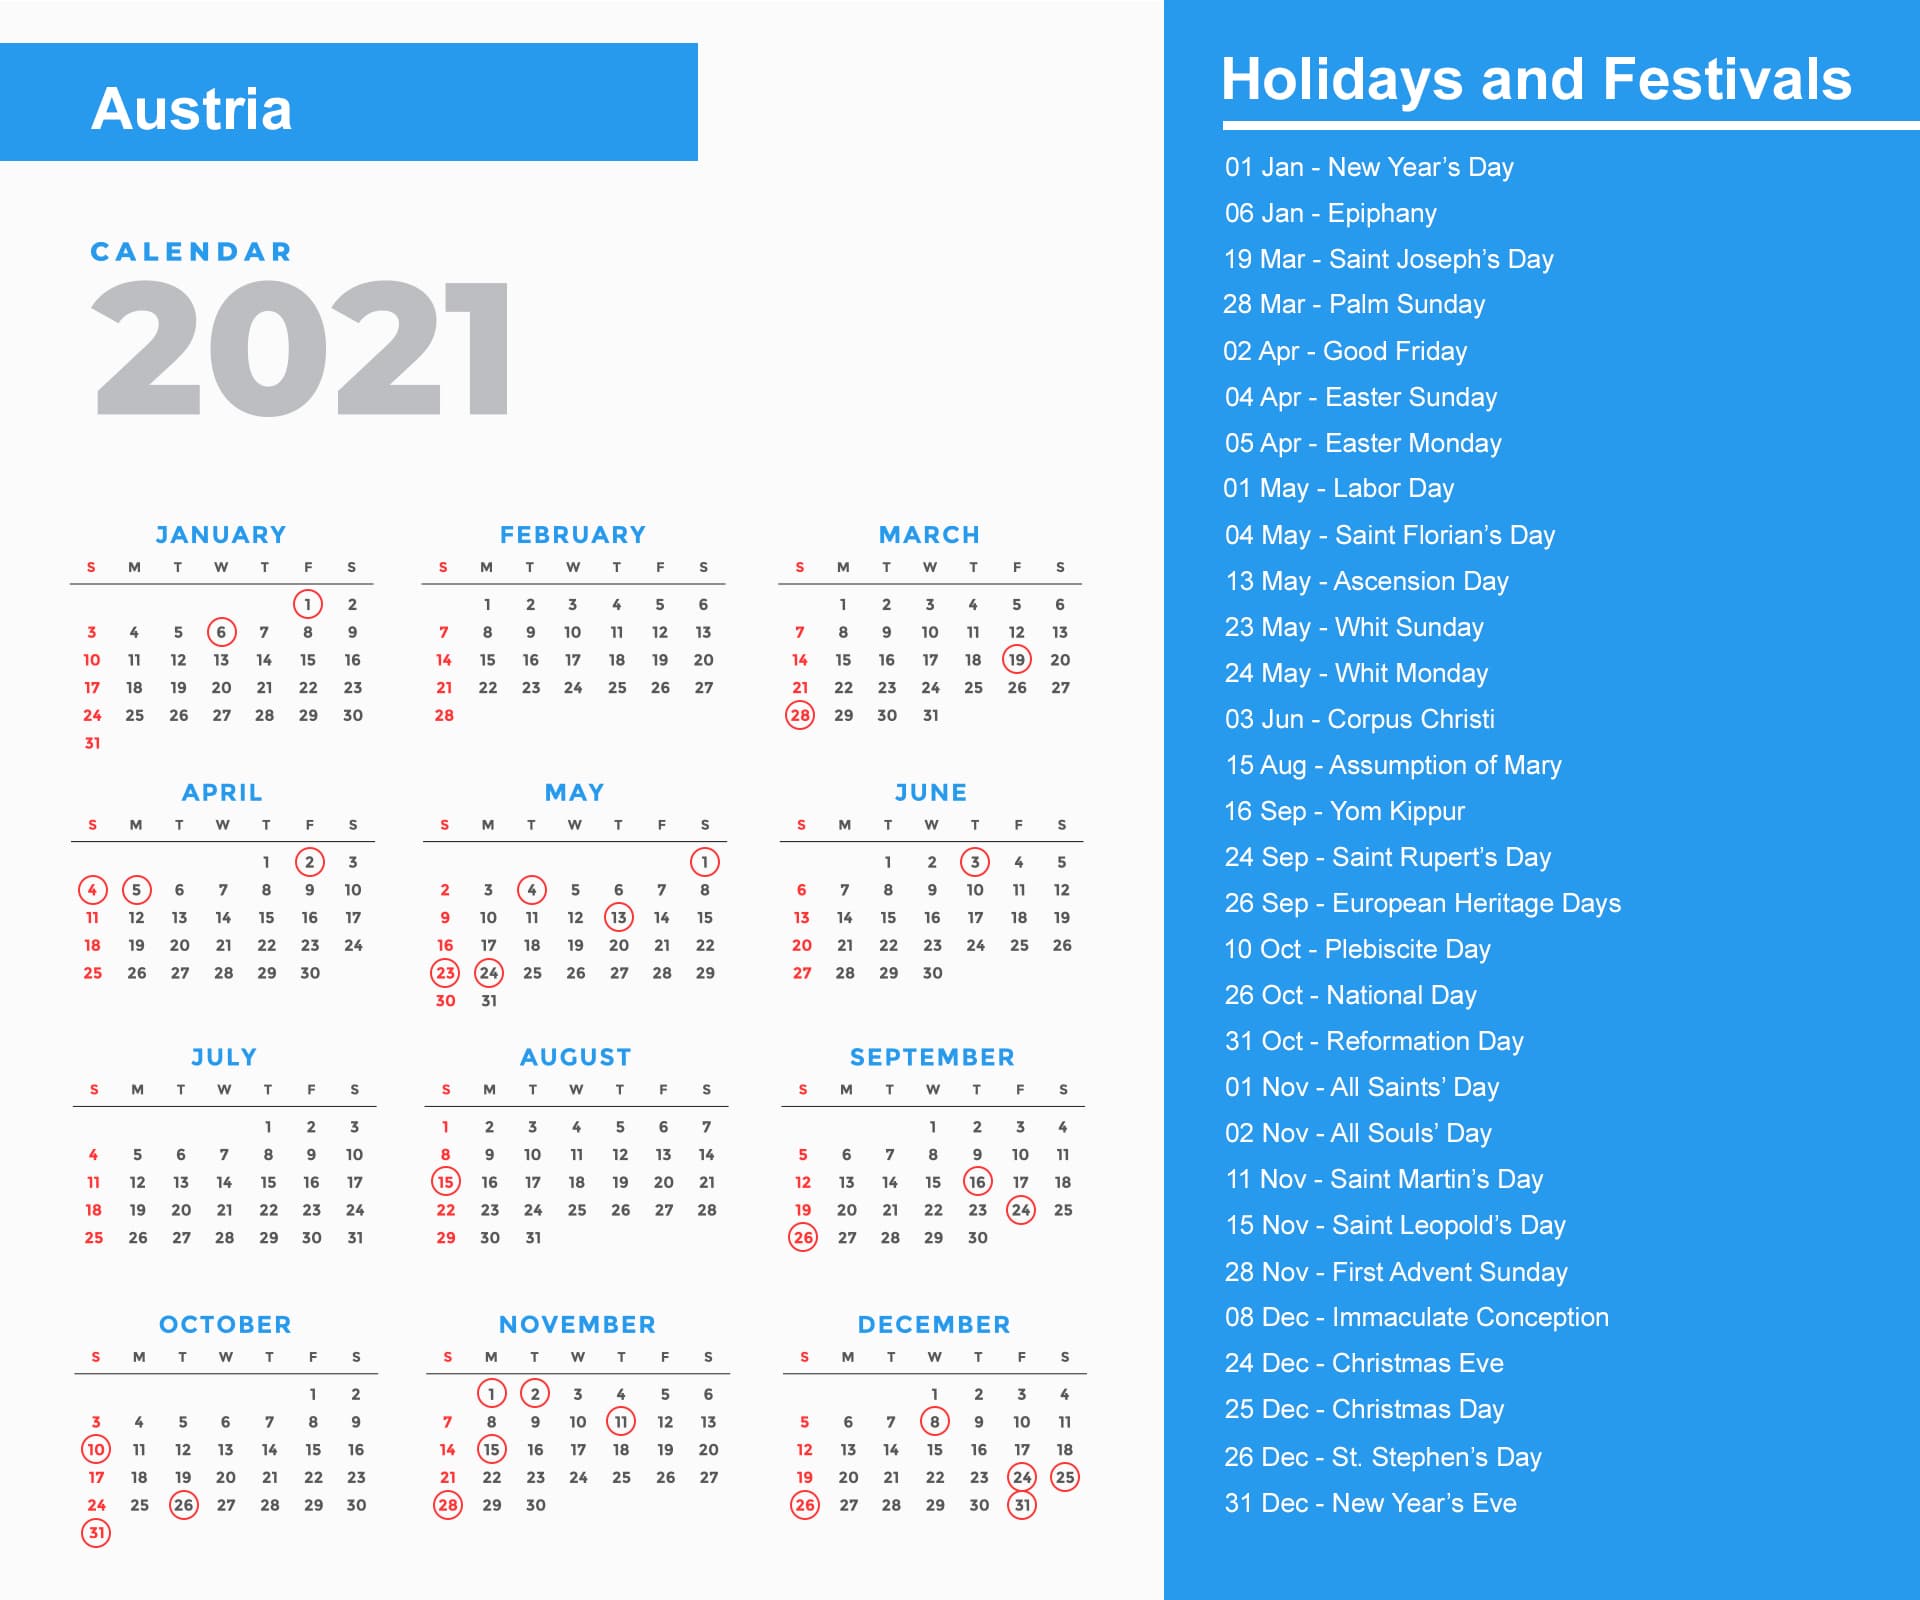 Austria Holidays Calendar 2021